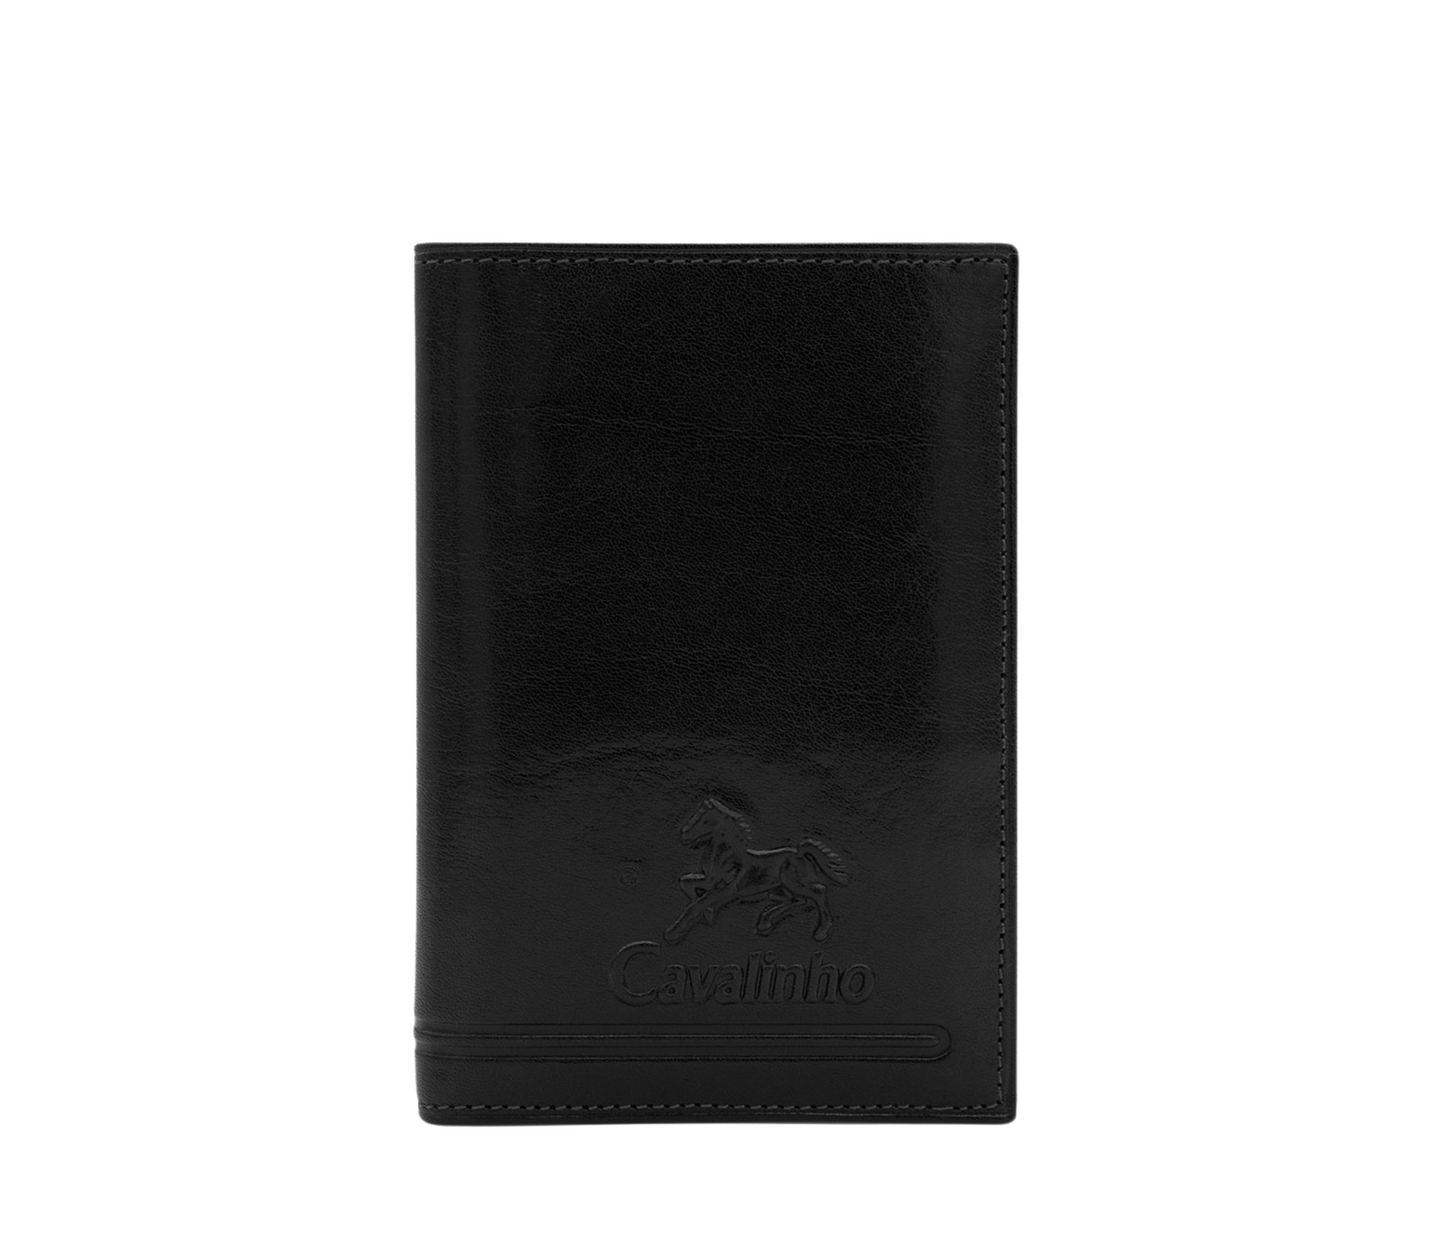 Cavalinho Men's 2 in 1 Bifold Leather Wallet - Black - 28610556.01_P01